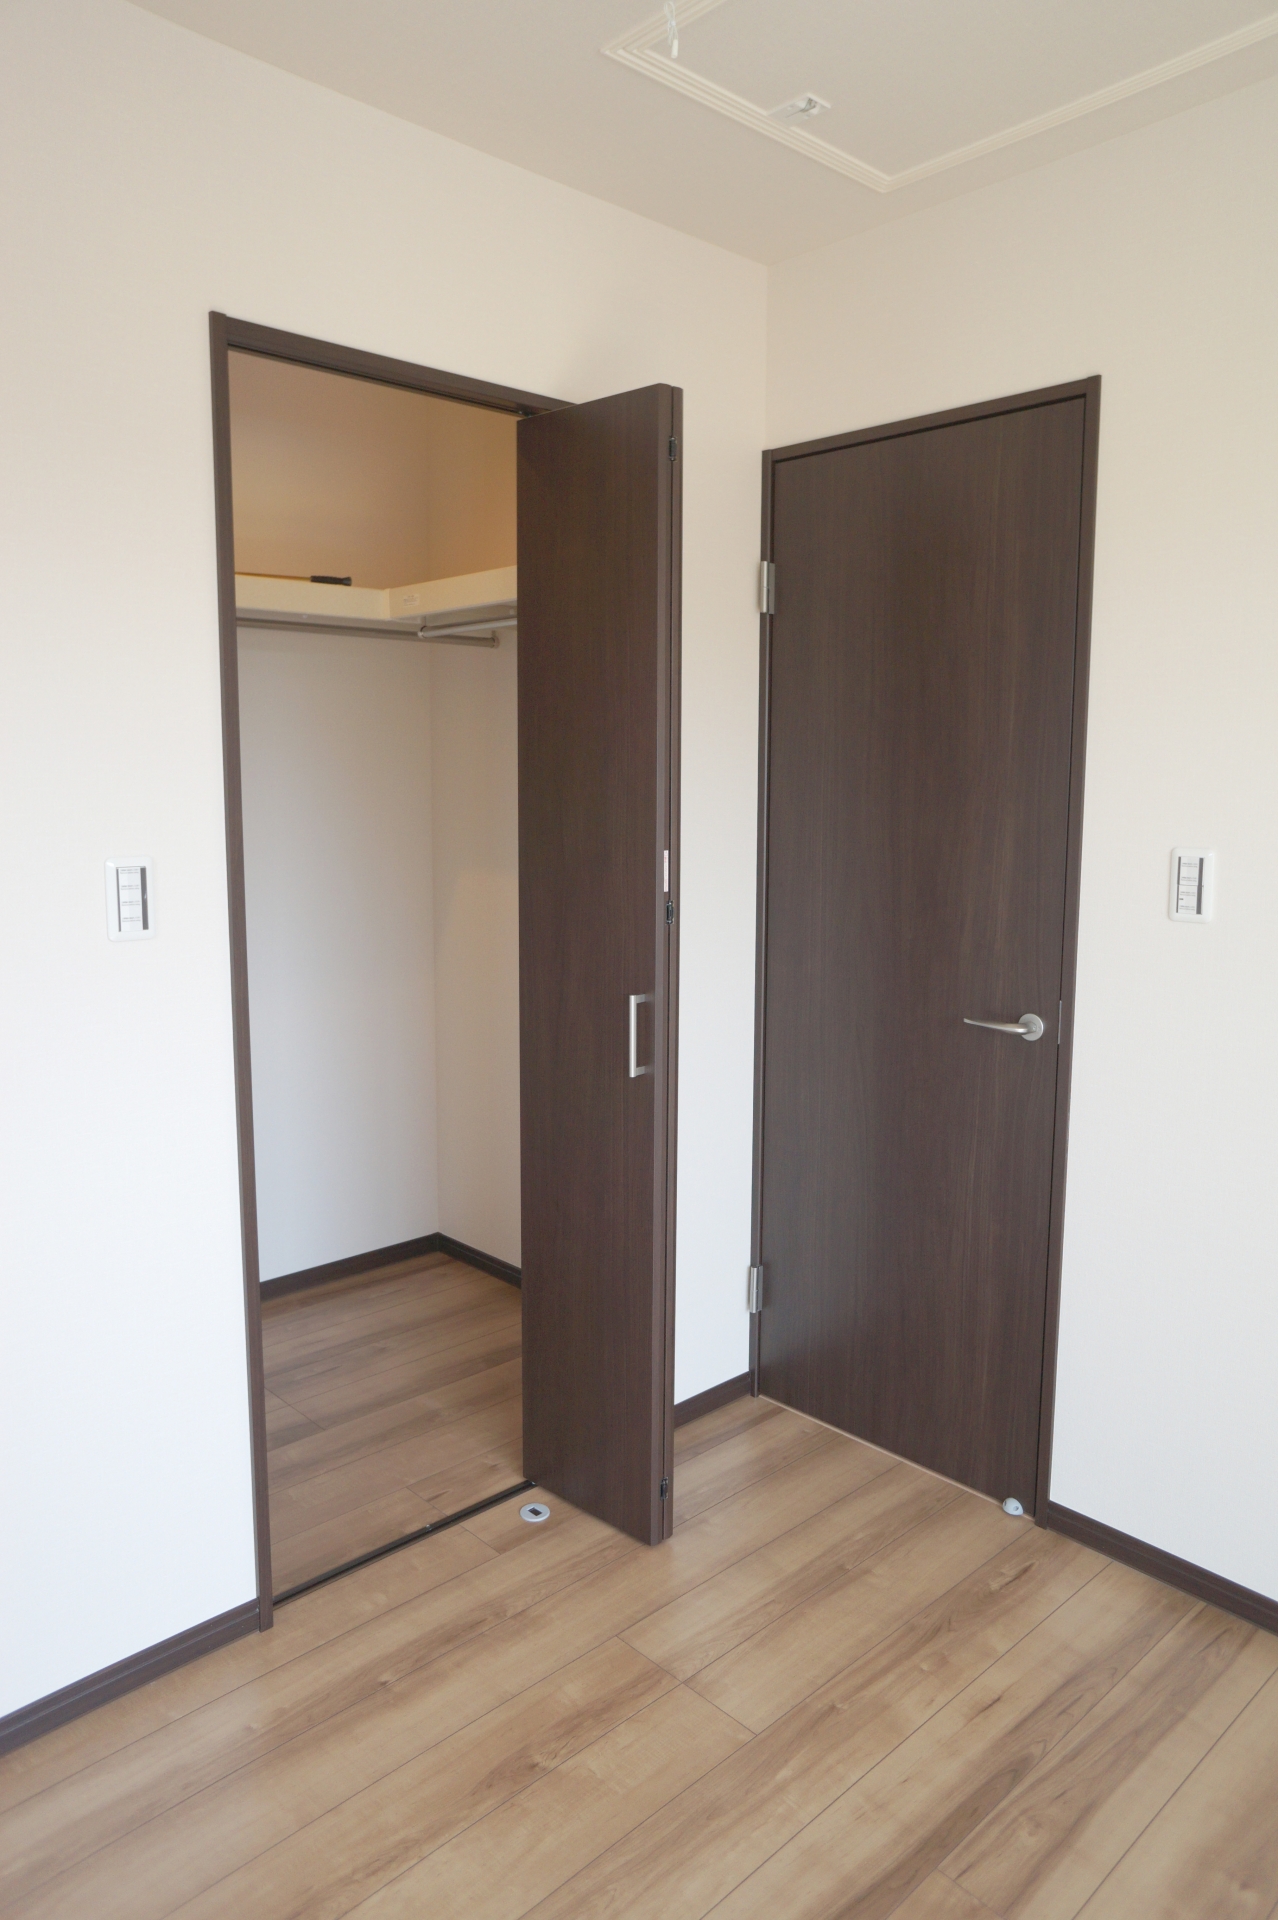 【部屋のドアが開かない!】家の部屋・トイレ等の鍵トラブルや開かなくなった扉の開け方や対処方法を解説 Key110